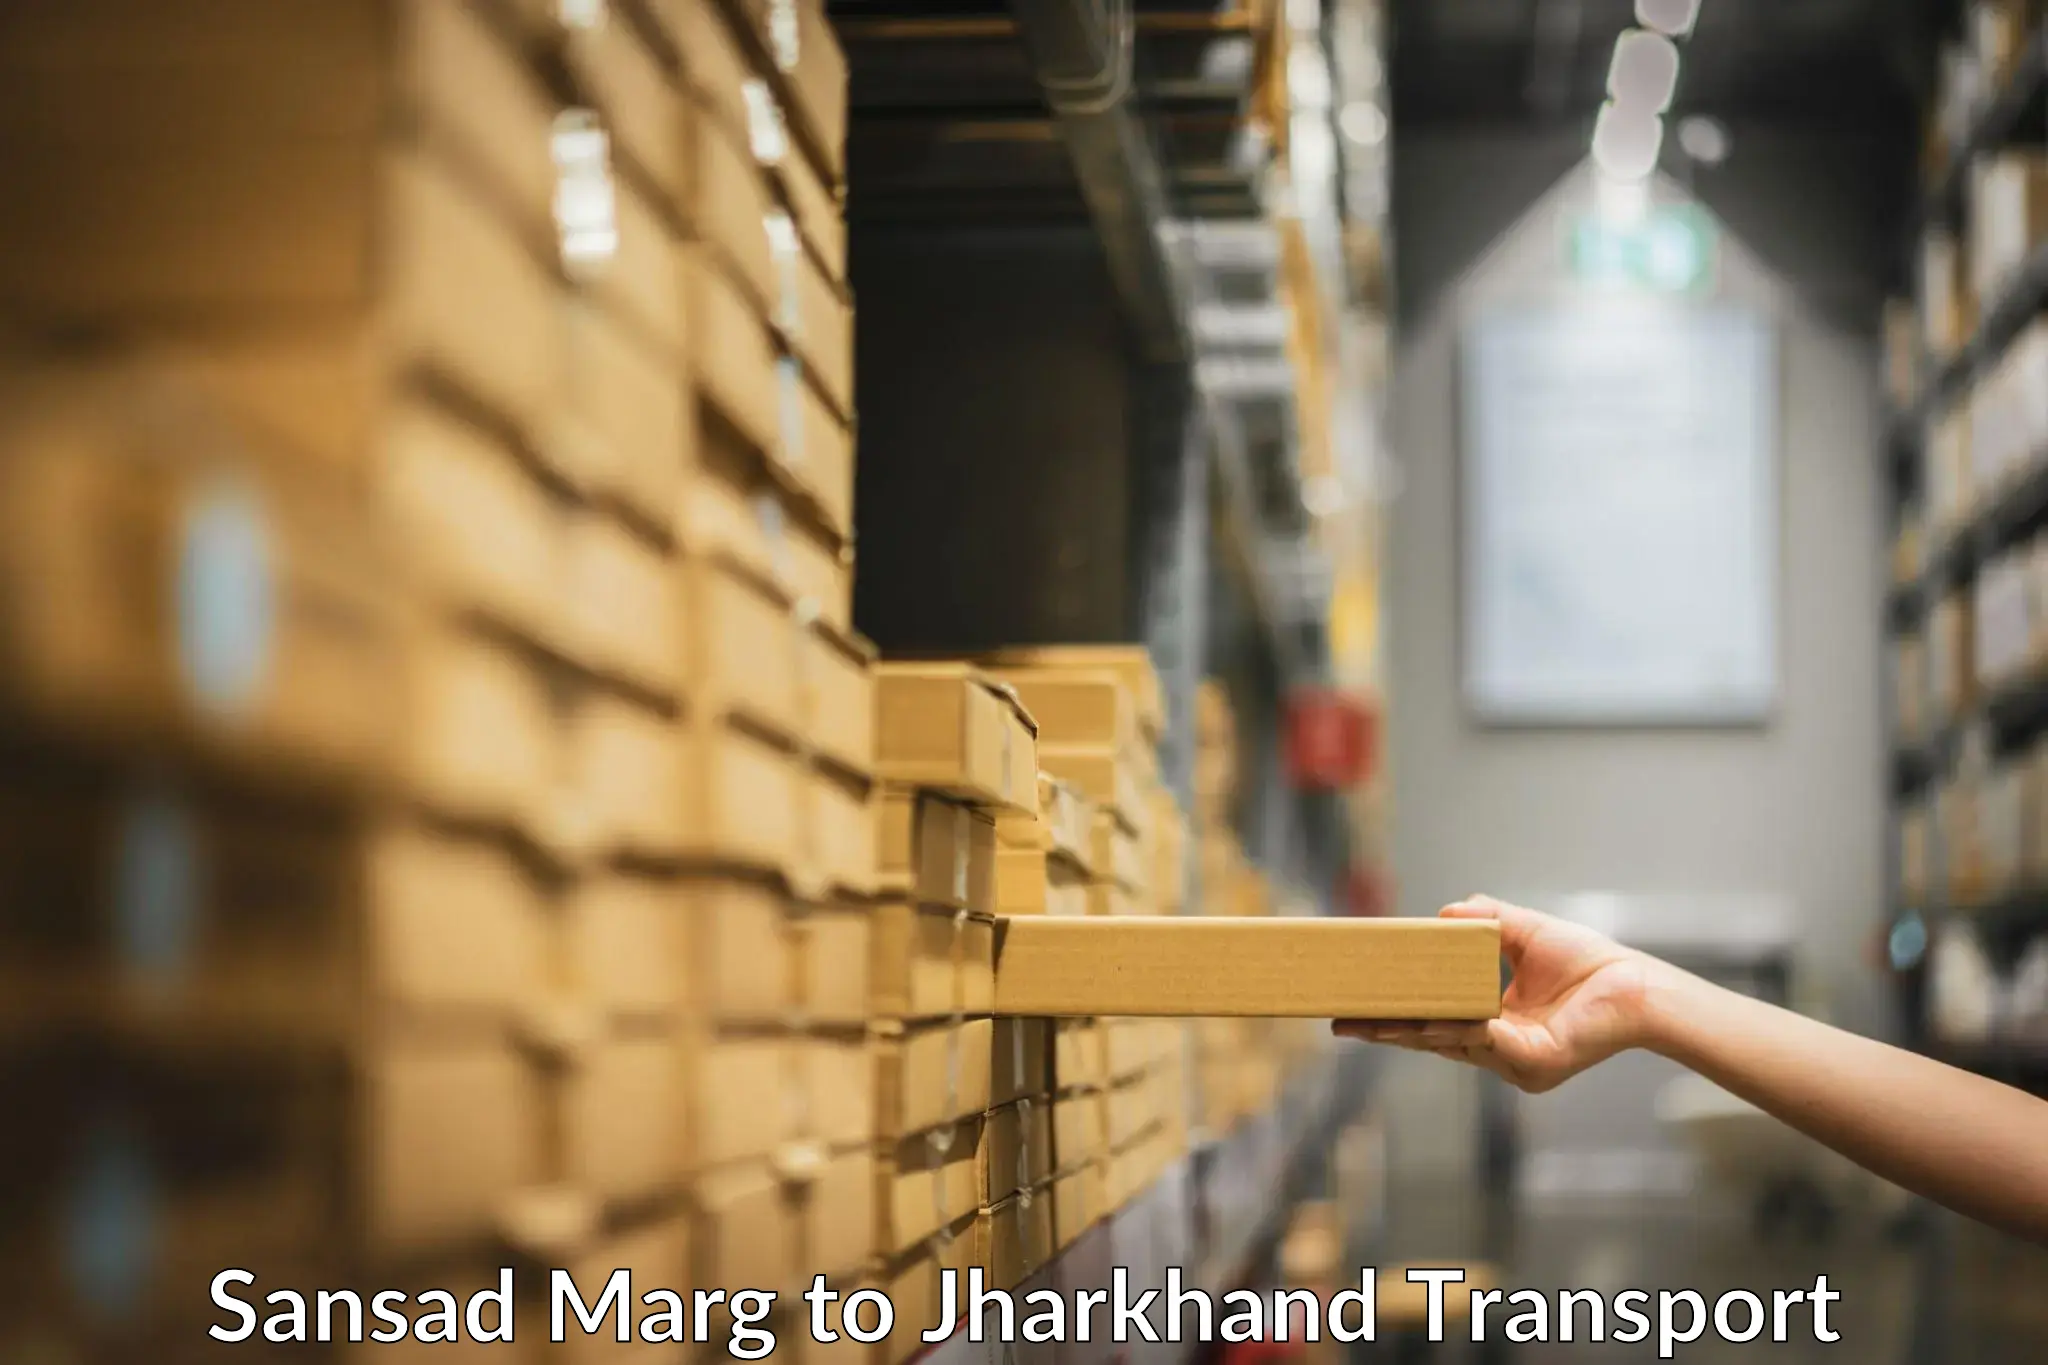 Furniture transport service Sansad Marg to Medininagar